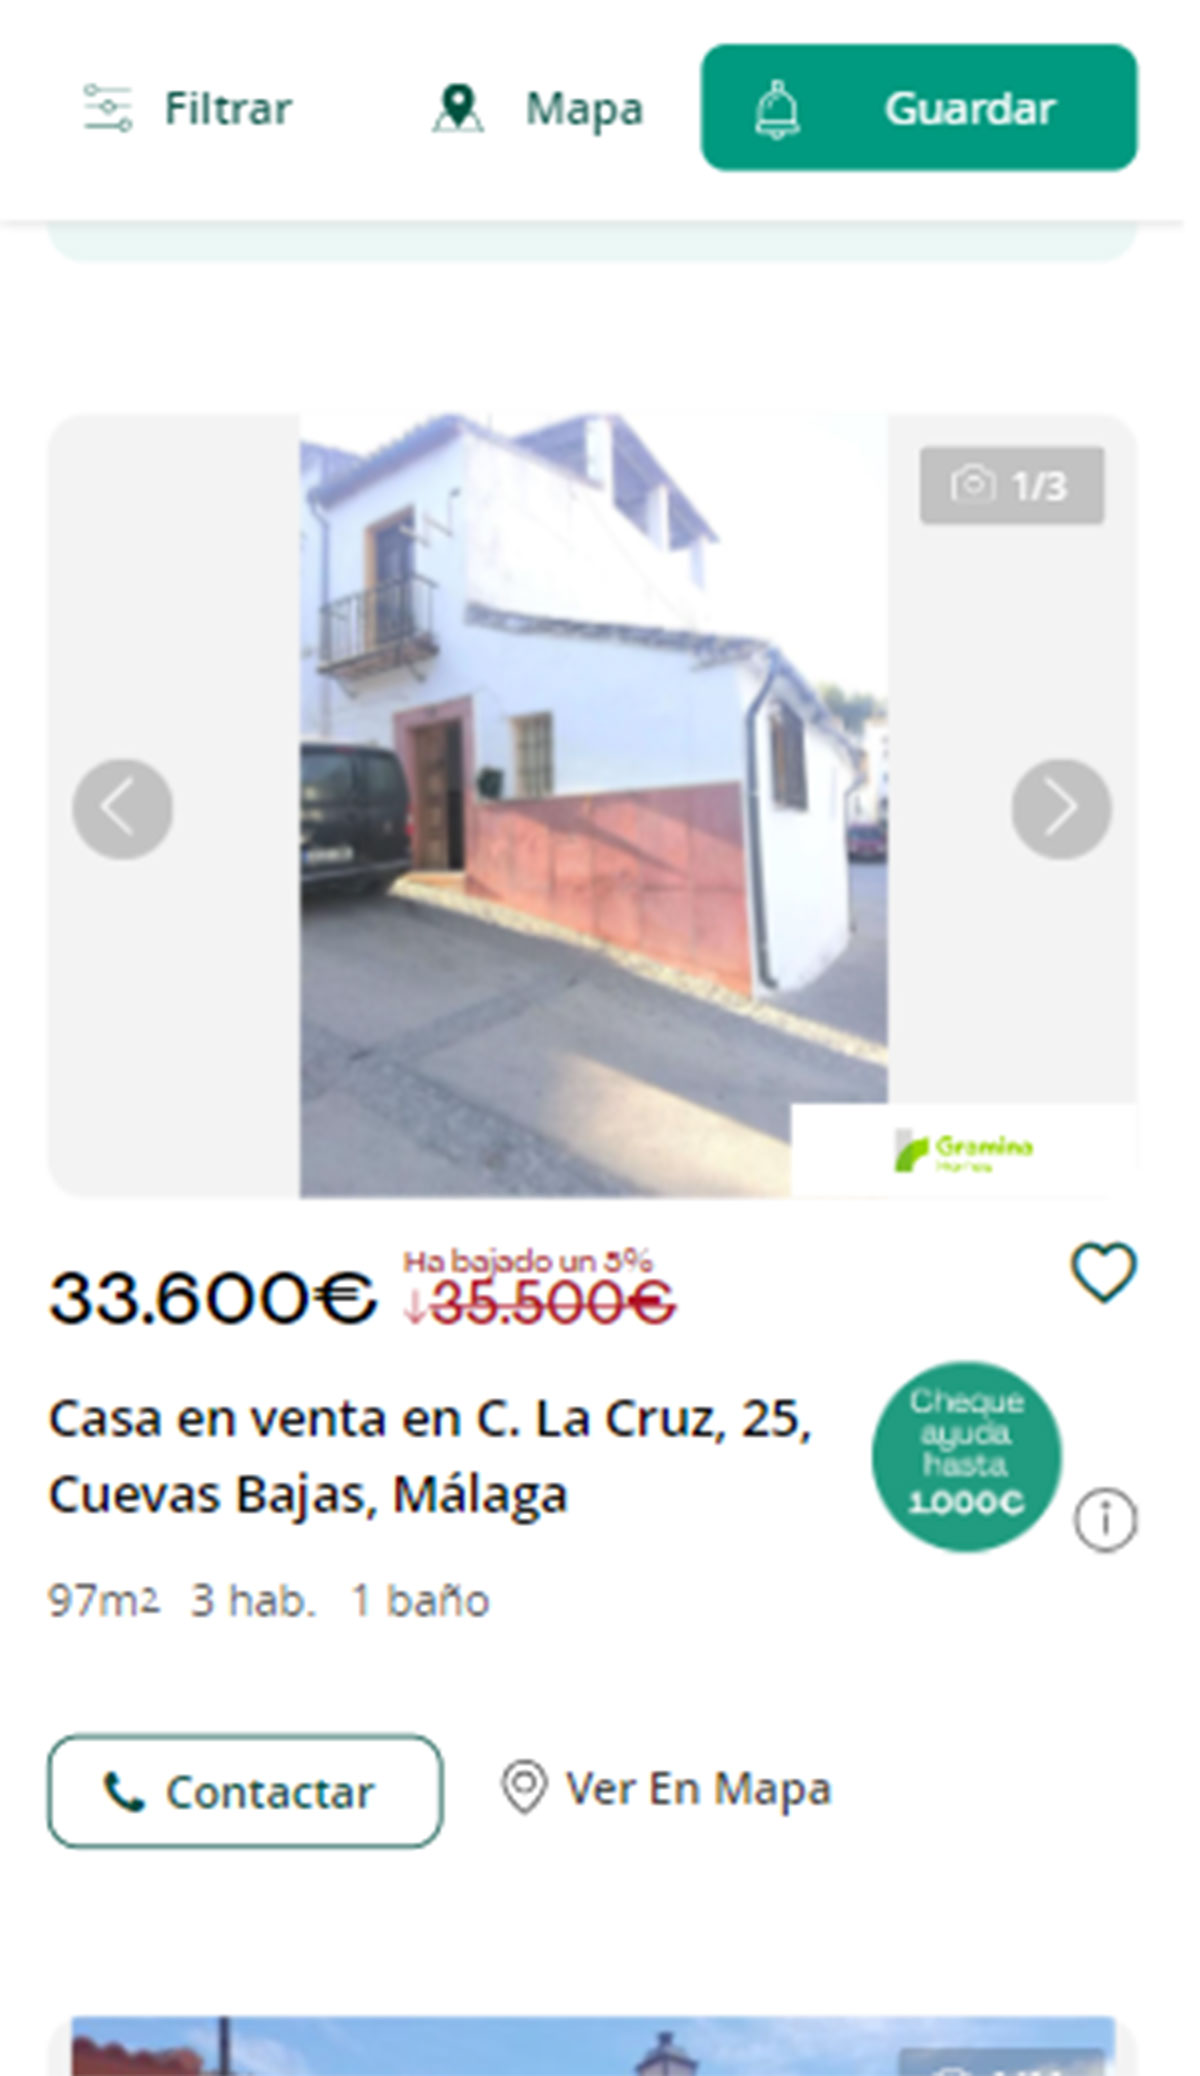 Piso a la venta en Málaga por 33.600 euros